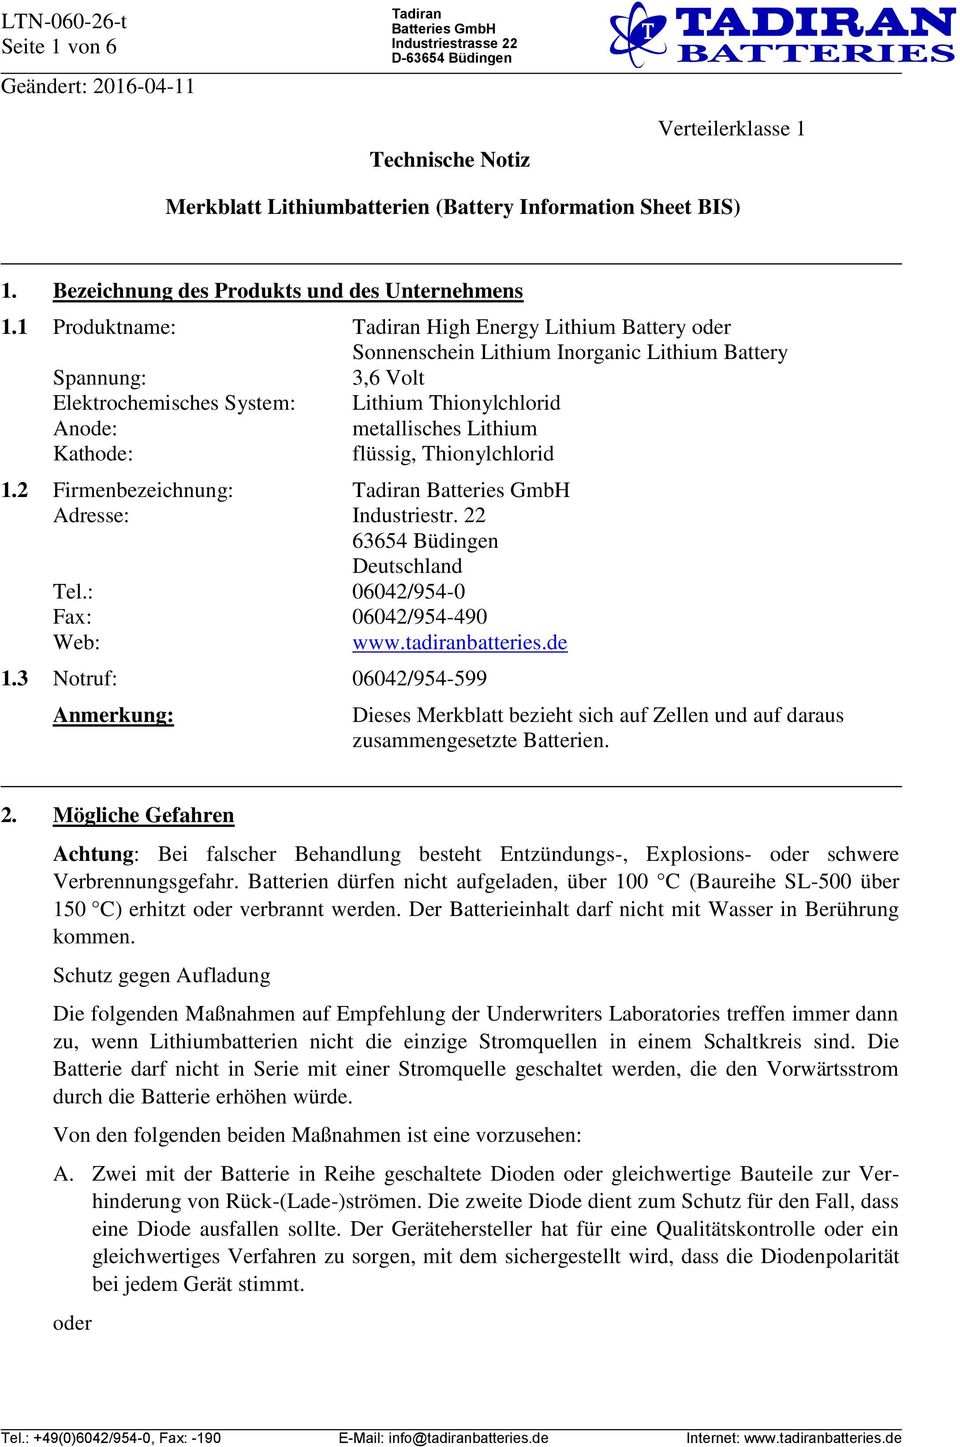 flüssig, Thionylchlorid 1.2 Firmenbezeichnung: Adresse: Industriestr. 22 63654 Büdingen Deutschland Tel.: 06042/954-0 Fax: 06042/954-490 Web: www.tadiranbatteries.de 1.